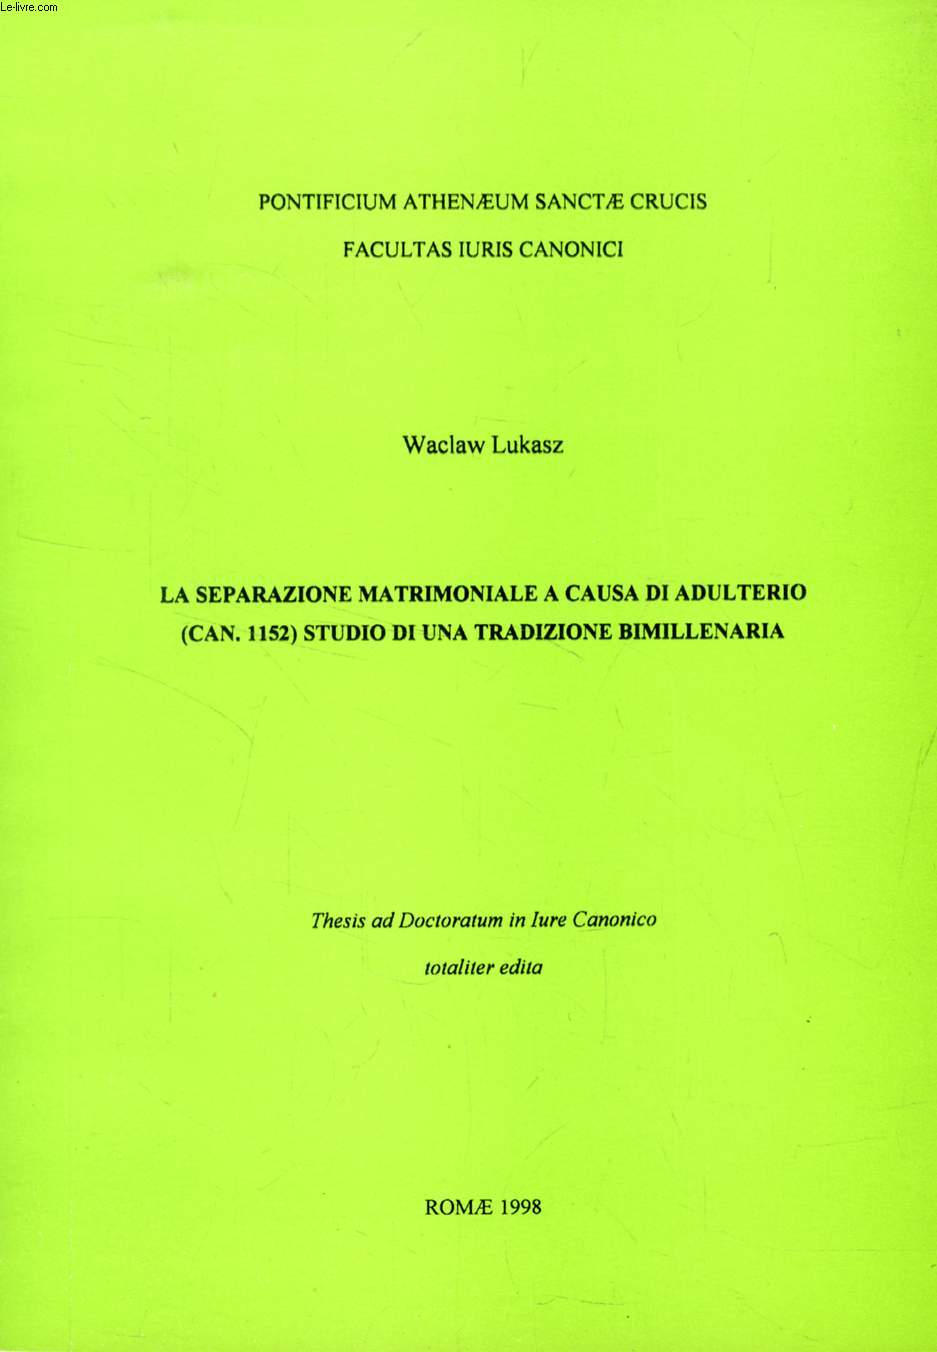 LA SEPARAZIONE MATRIMONIALE A CAUSA DI ADULTERIO (CAN. 1152), STUDIO DI UNA TRADIZIONE BIMILLENARIA (THESIS)